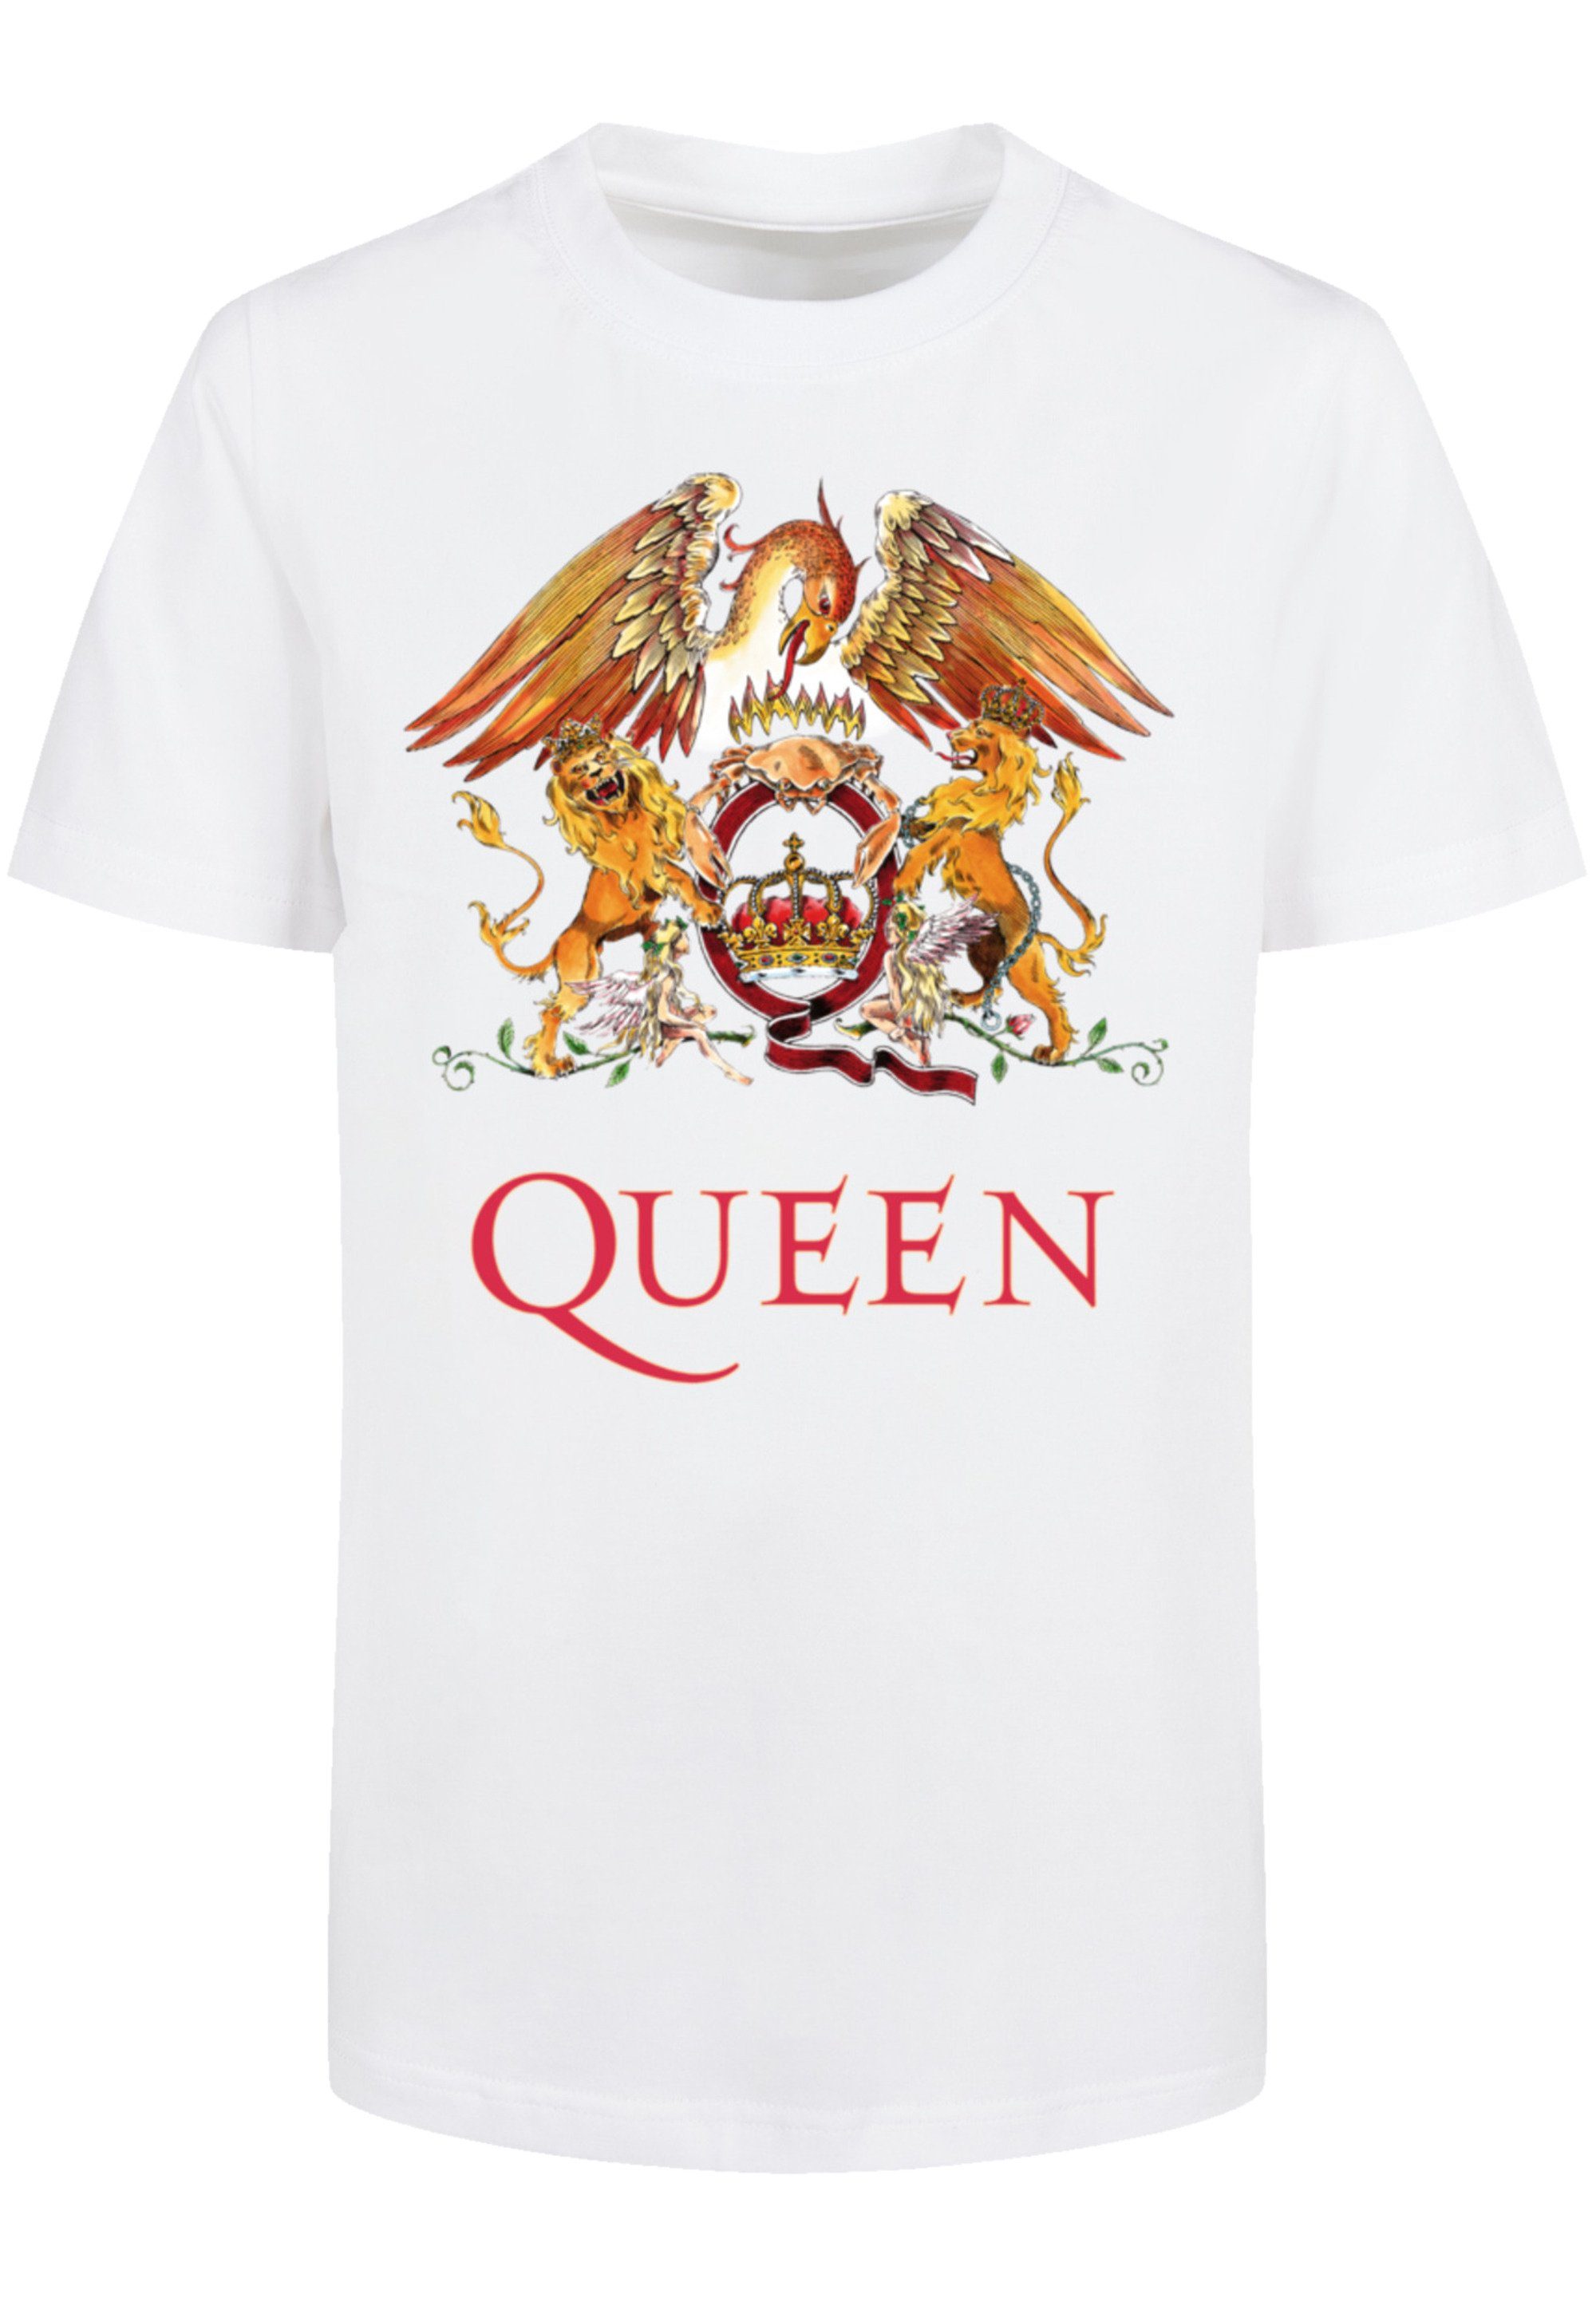 Fit F4NT4STIC Regular Crest mit Classic Rundhalsausschnitt gerippten T-Shirt Queen und Print,